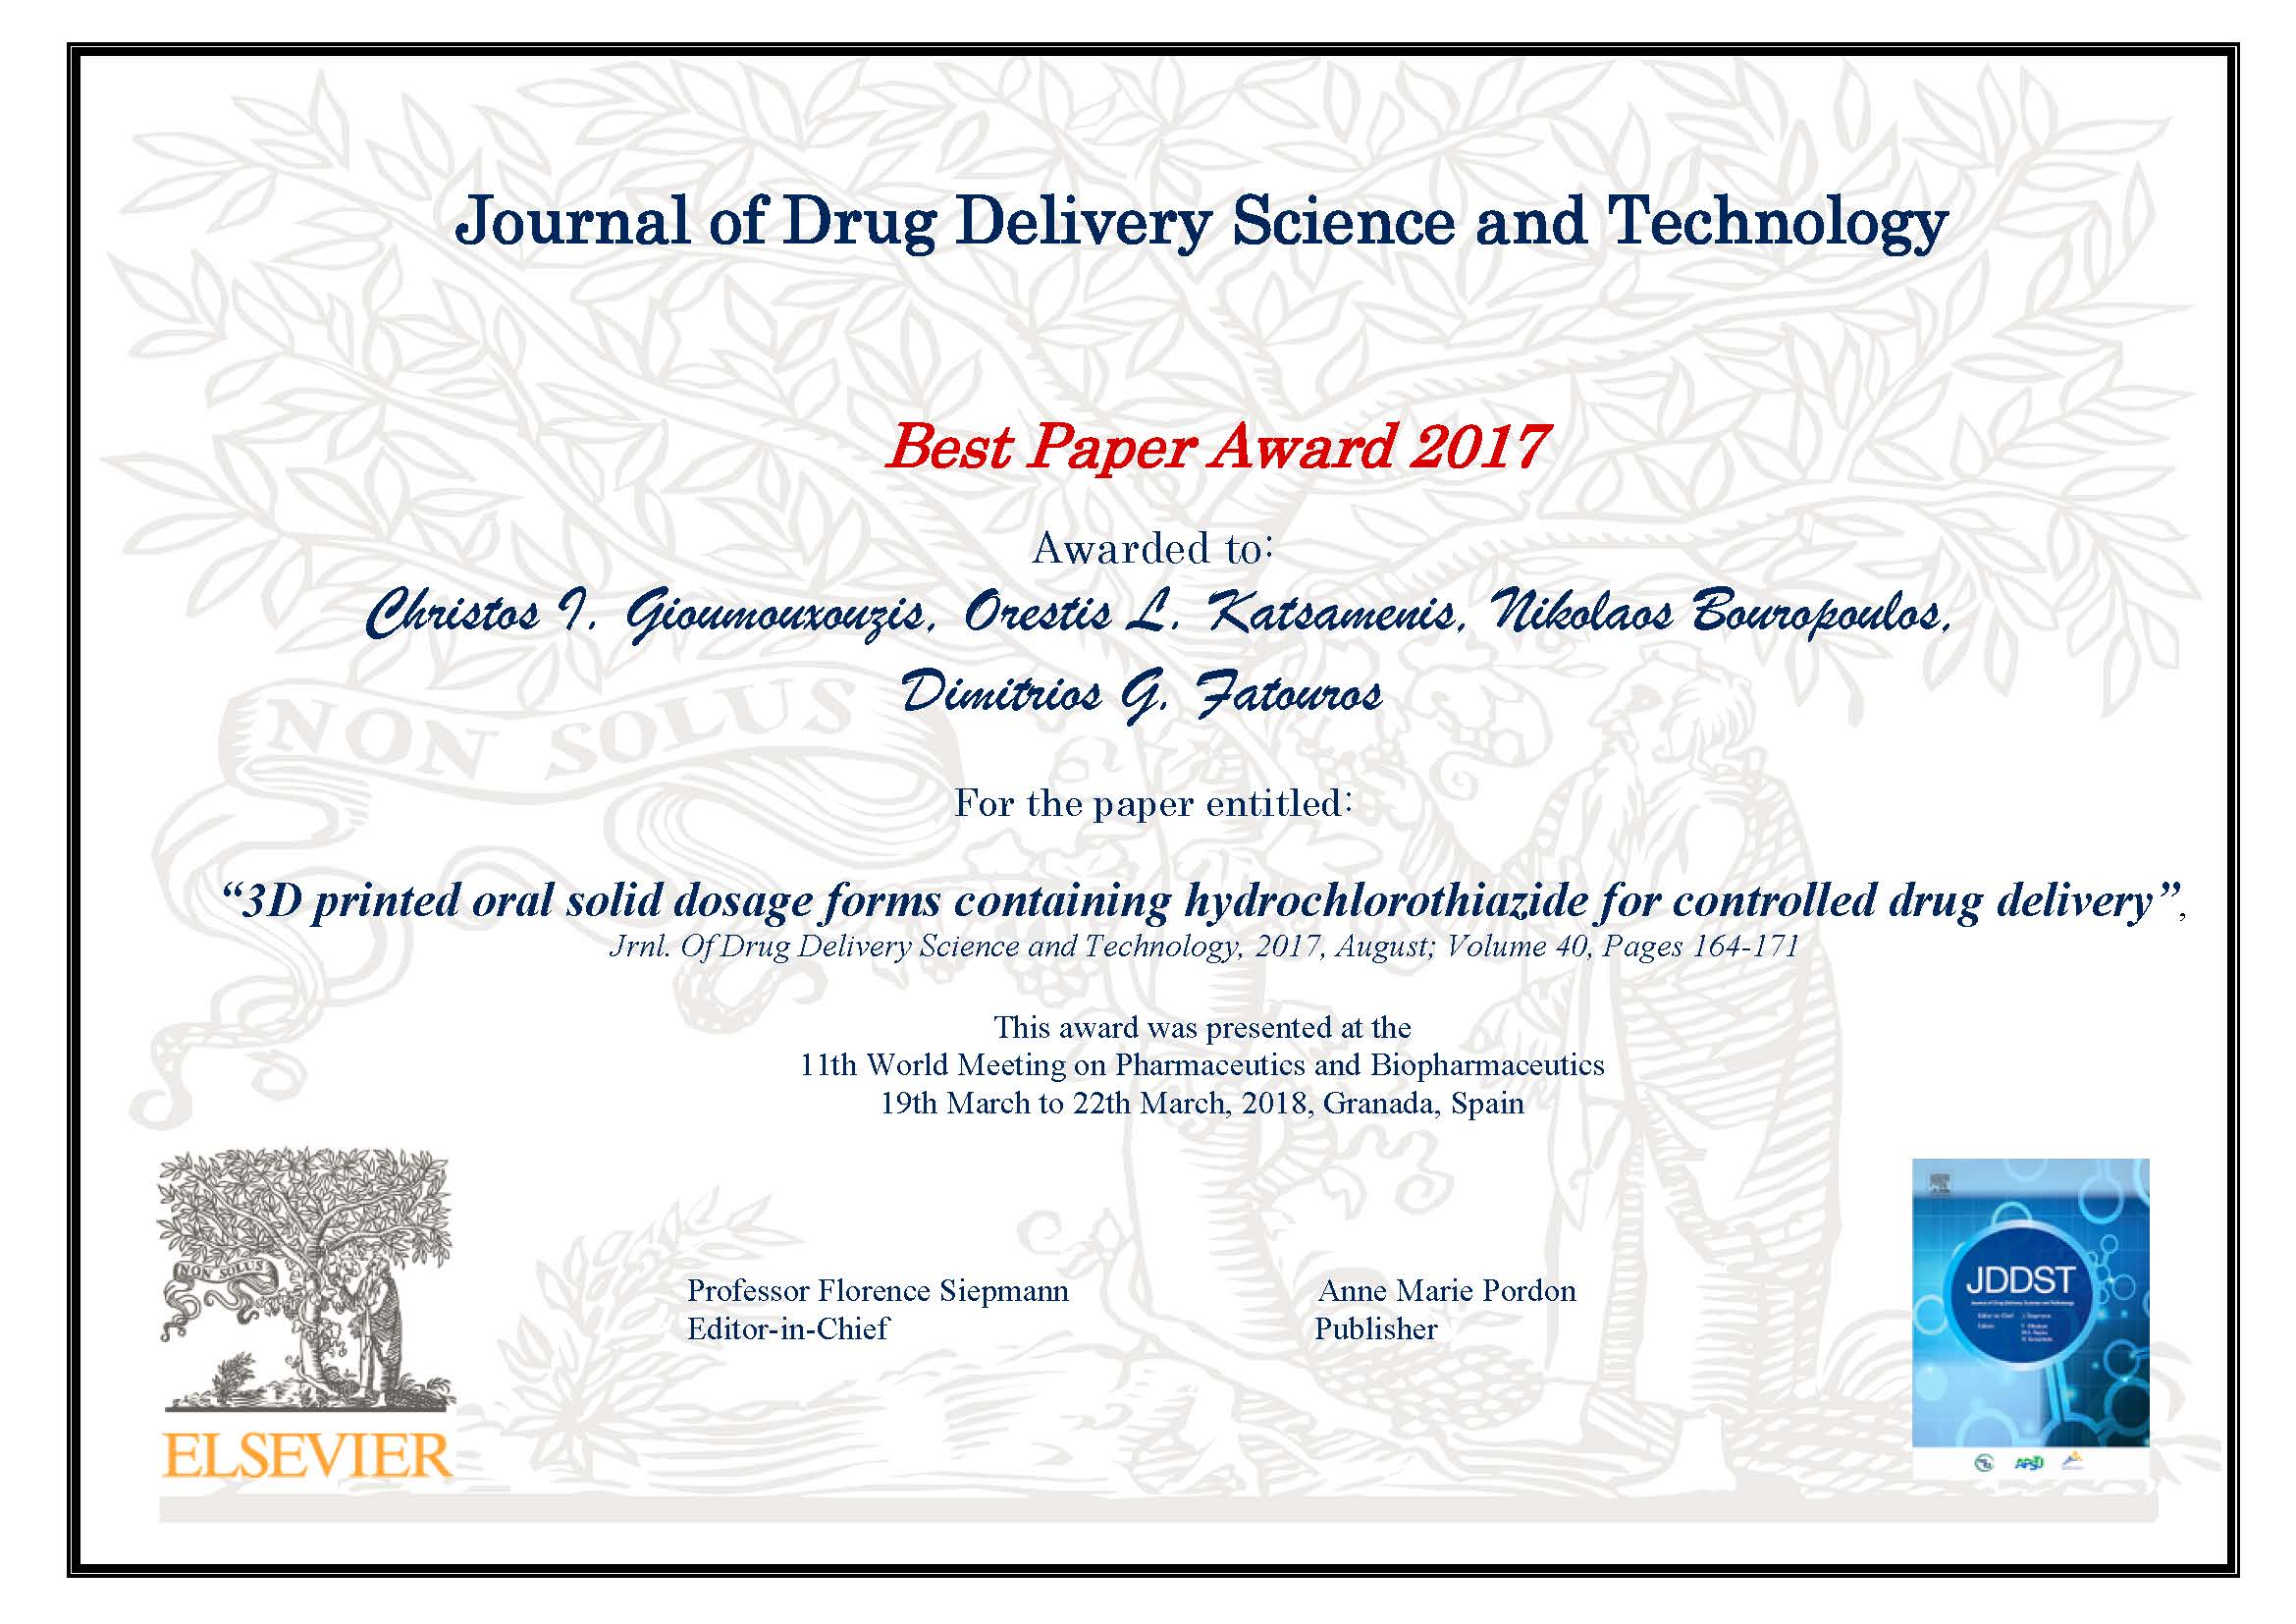 JDDST 2017 Best Paper